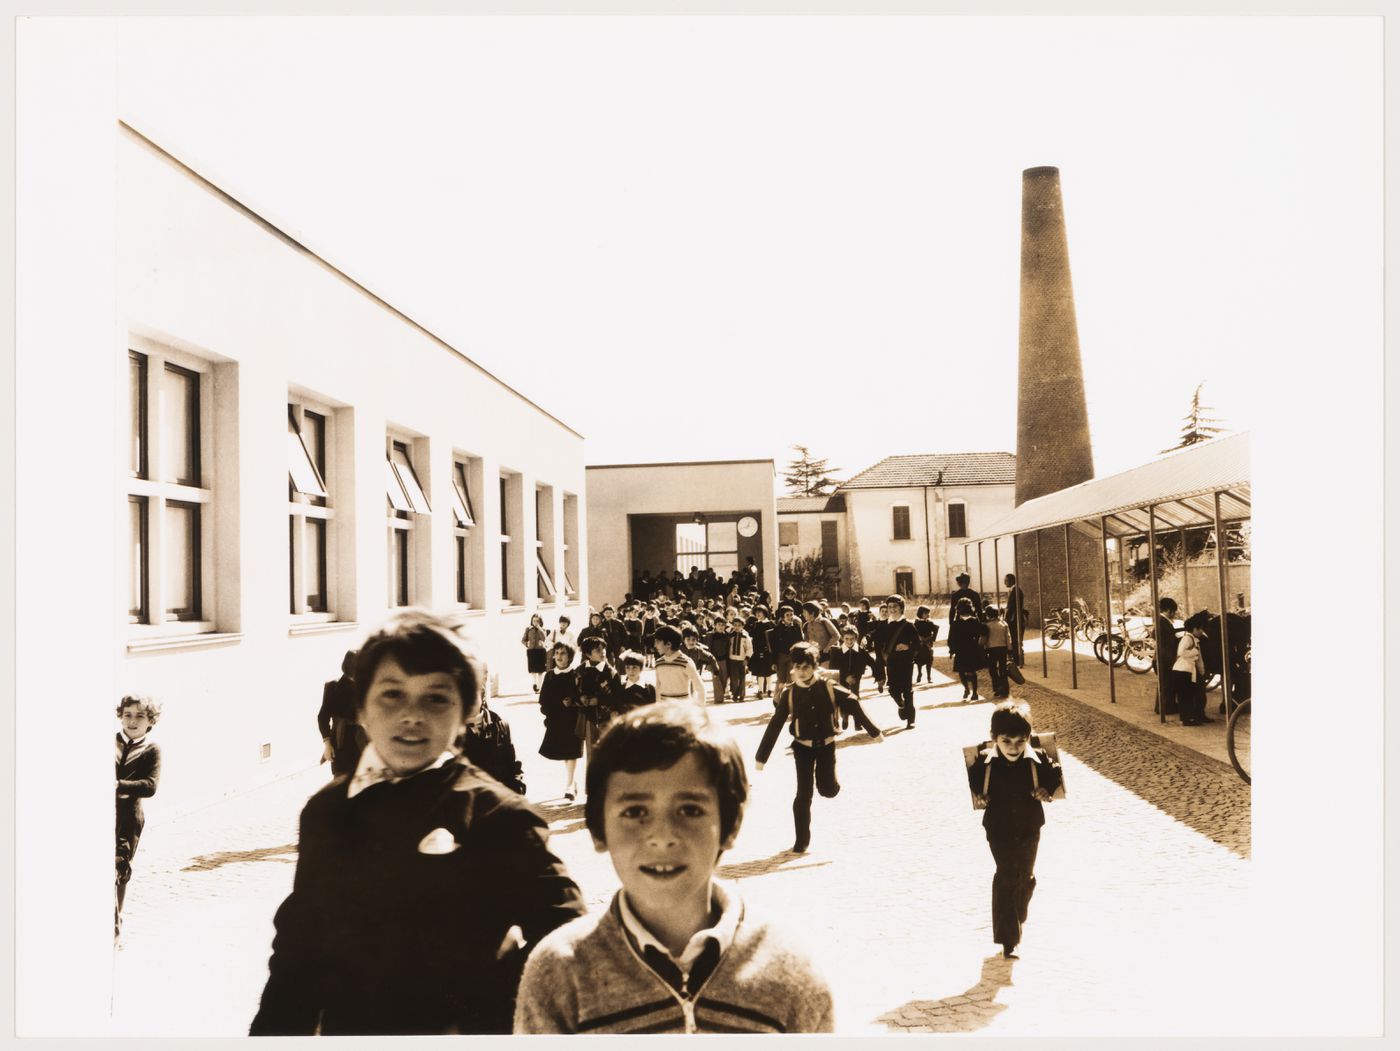 View of Scuola elementare a Fagnano Olona with children, Italy